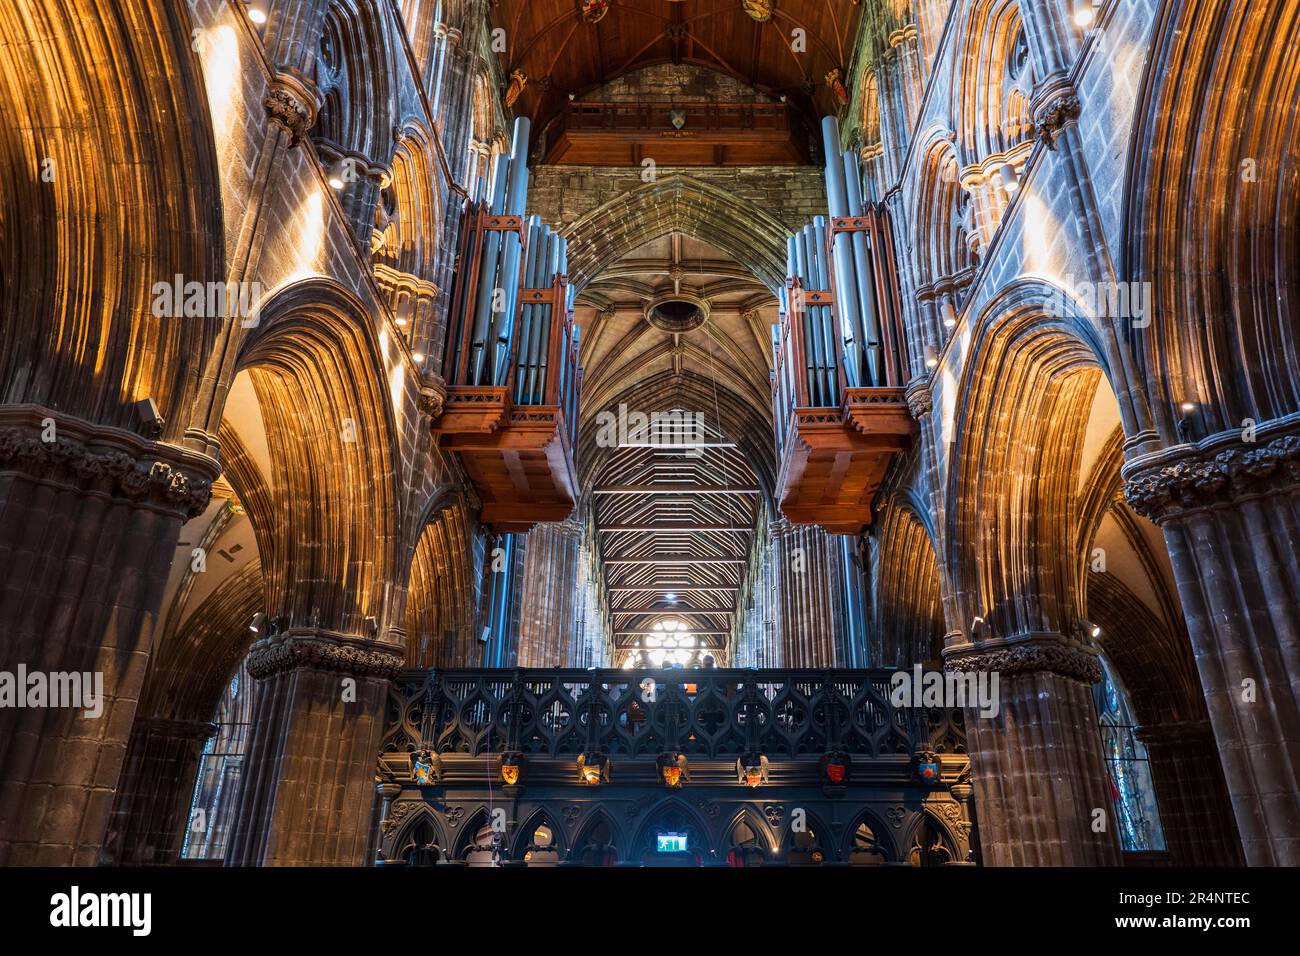 Interno della Cattedrale di Glasgow nella città di Glasgow, Scozia, Regno Unito. Chiesa gotica risalente al 12th ° secolo, archi e tubi organi di choi Foto Stock